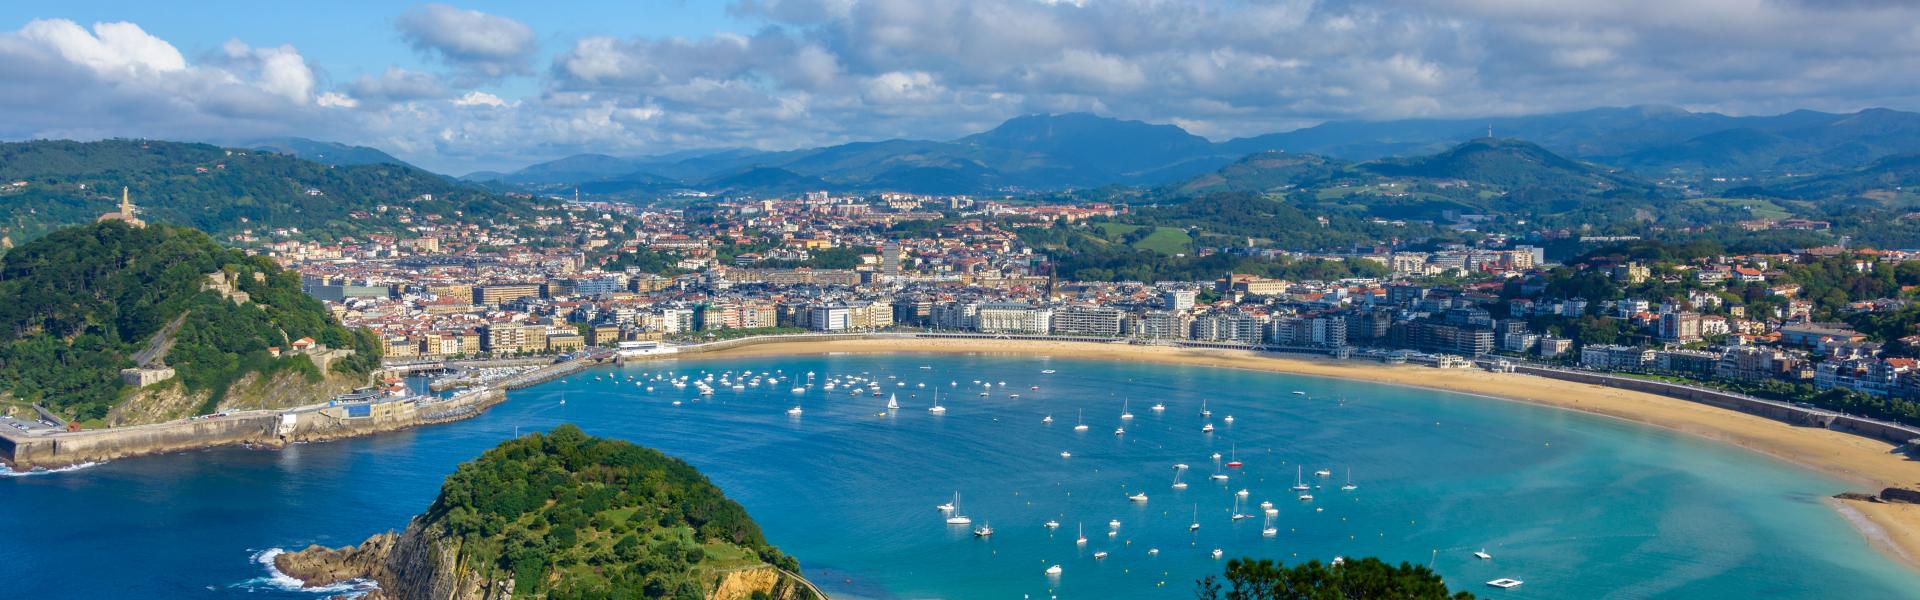 Noclegi i apartamenty wakacyjne w Kraju Basków - Casamundo